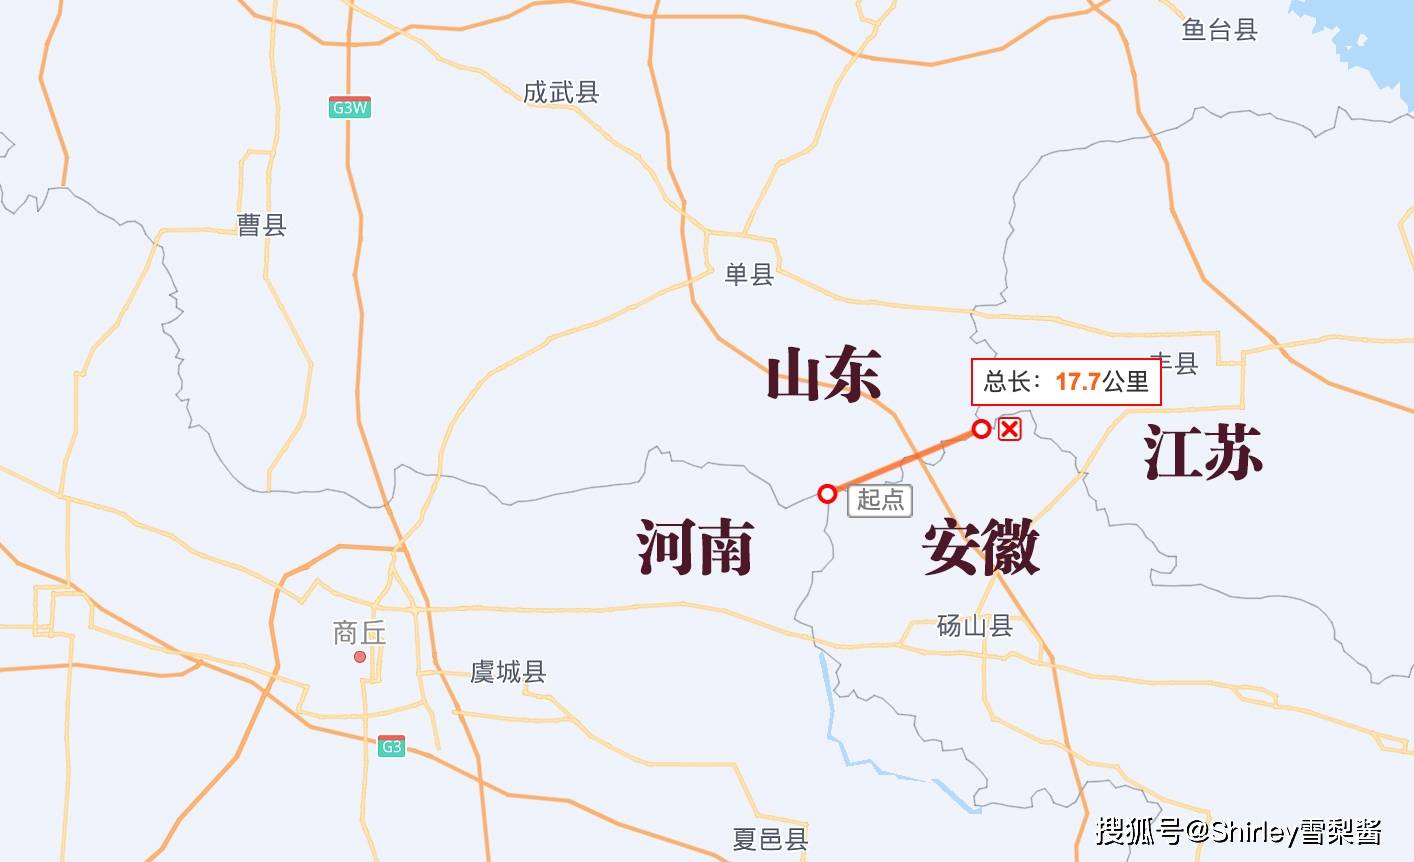 河南江苏地图图片